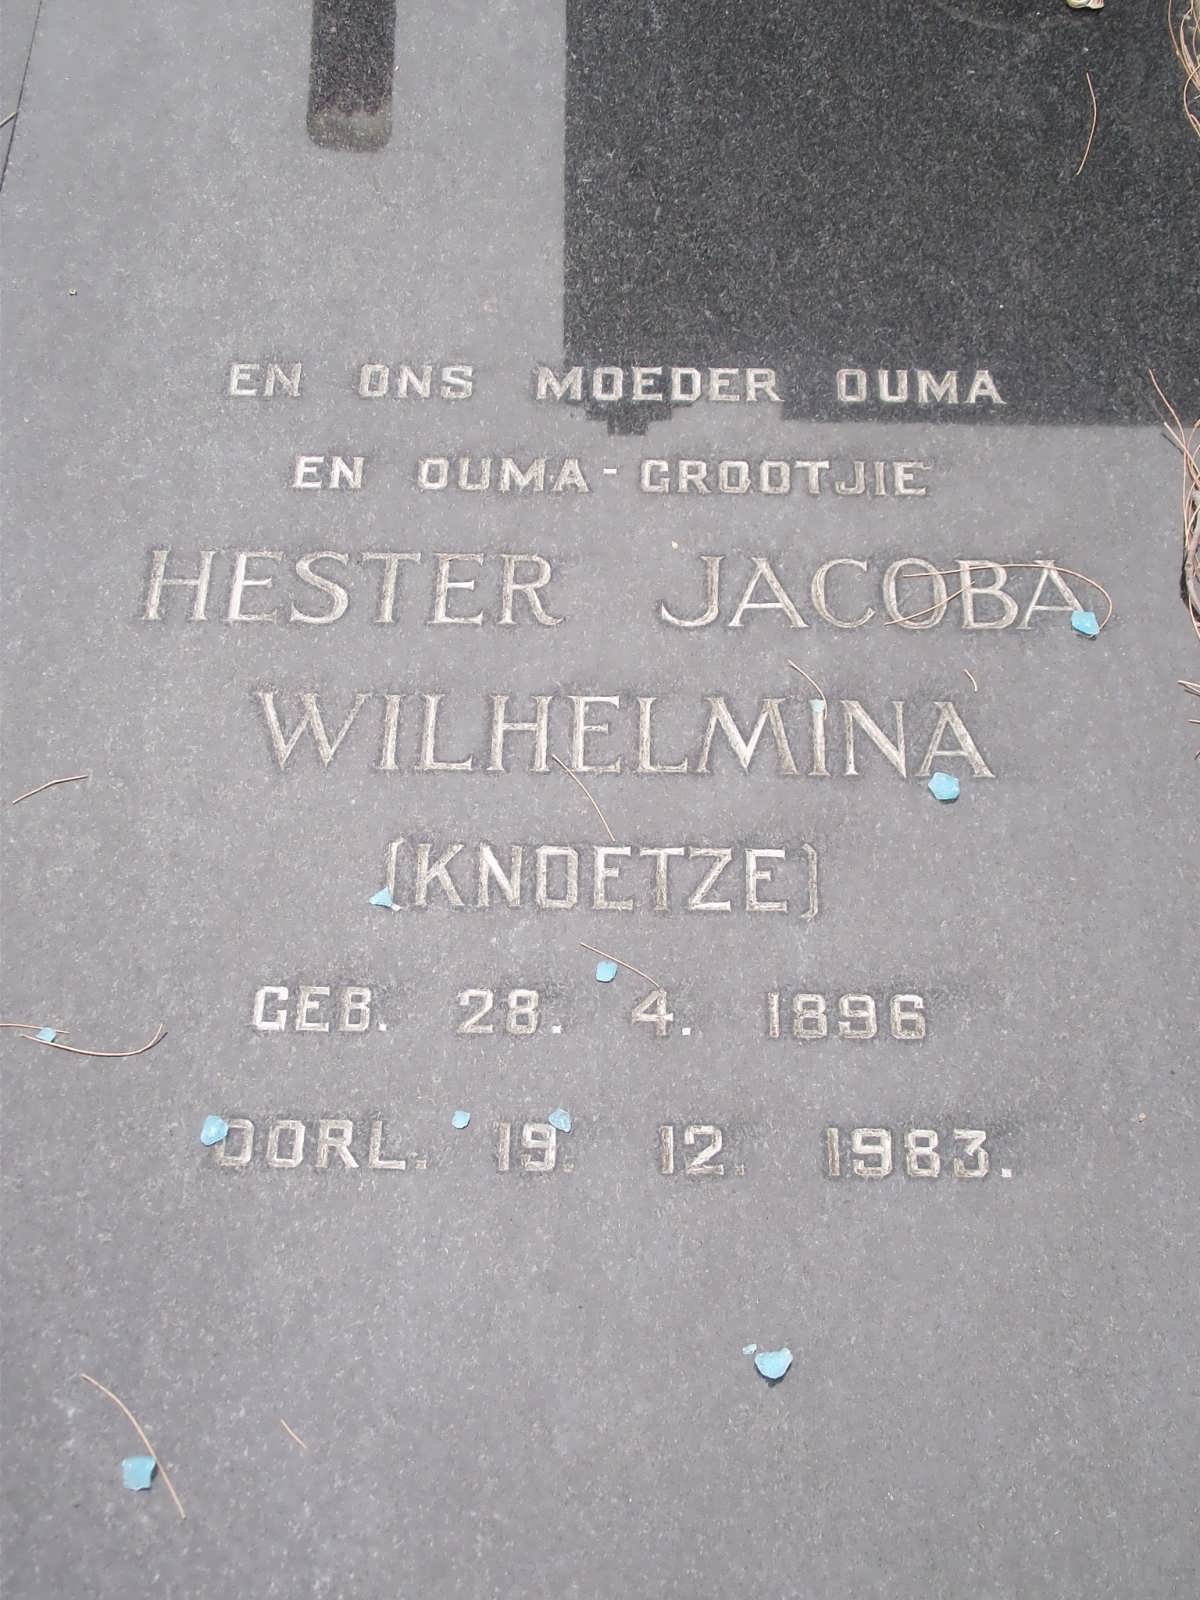 CONRADIE Hester Jacoba Wilhelmina nee KNOETZE 1896-1983